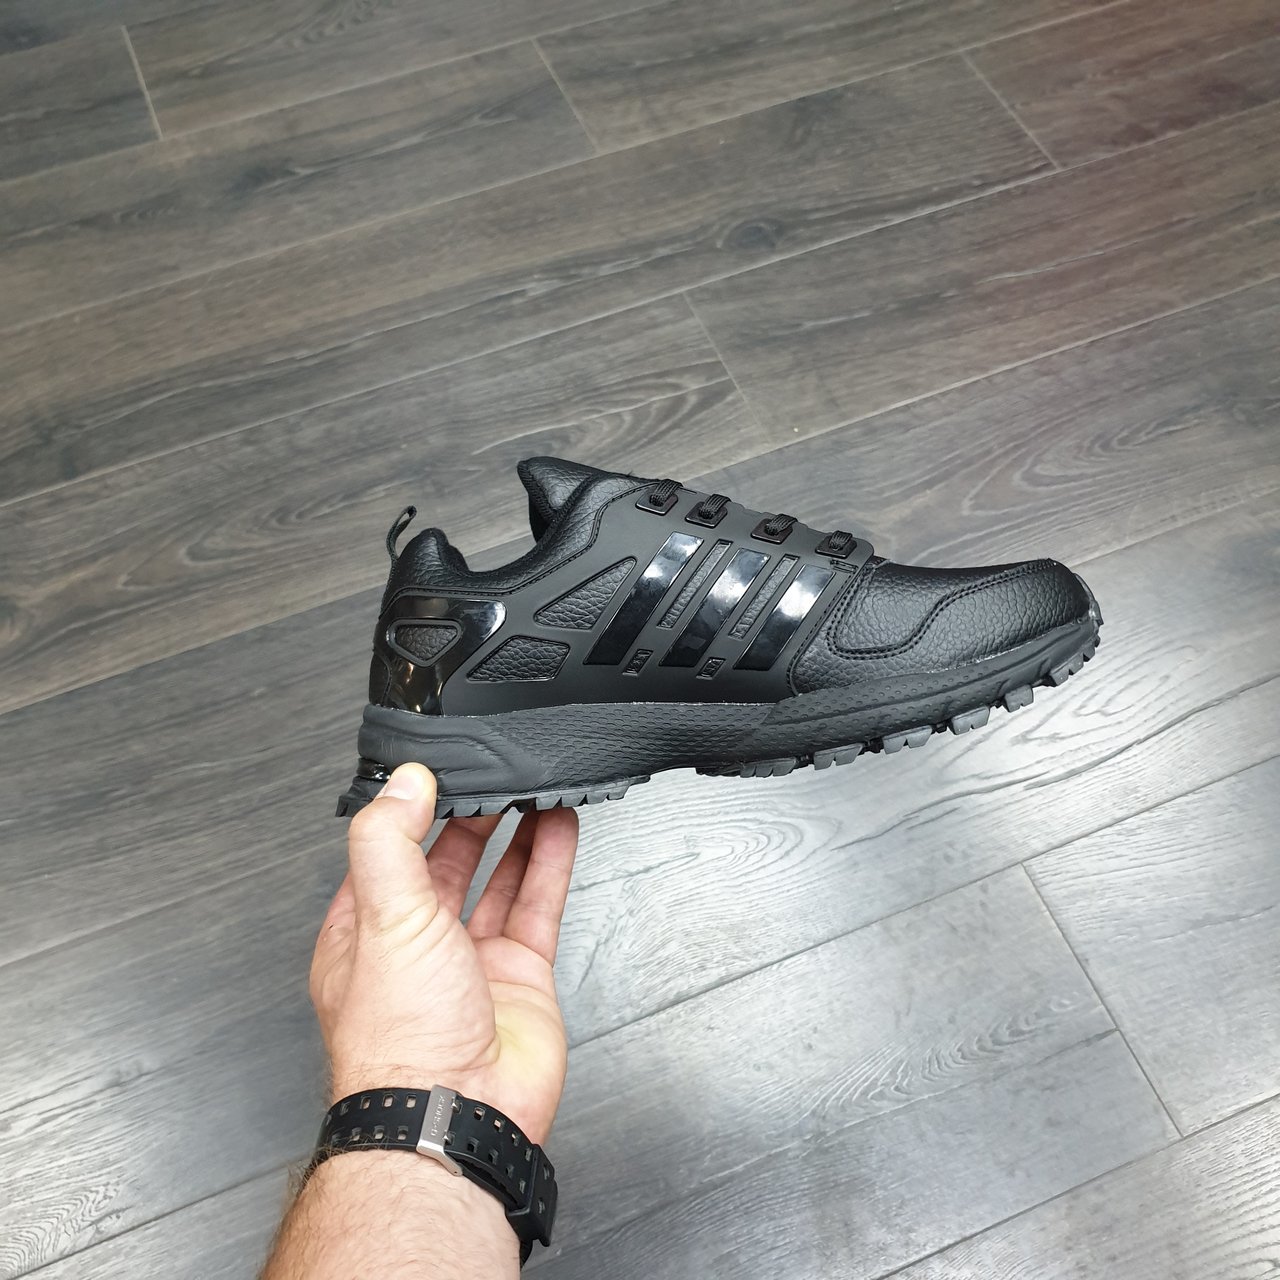 Купить кроссовки Адидас | Adidas Marathon TR 13 Black в интернет-магазине sport365shoes.by, Минске